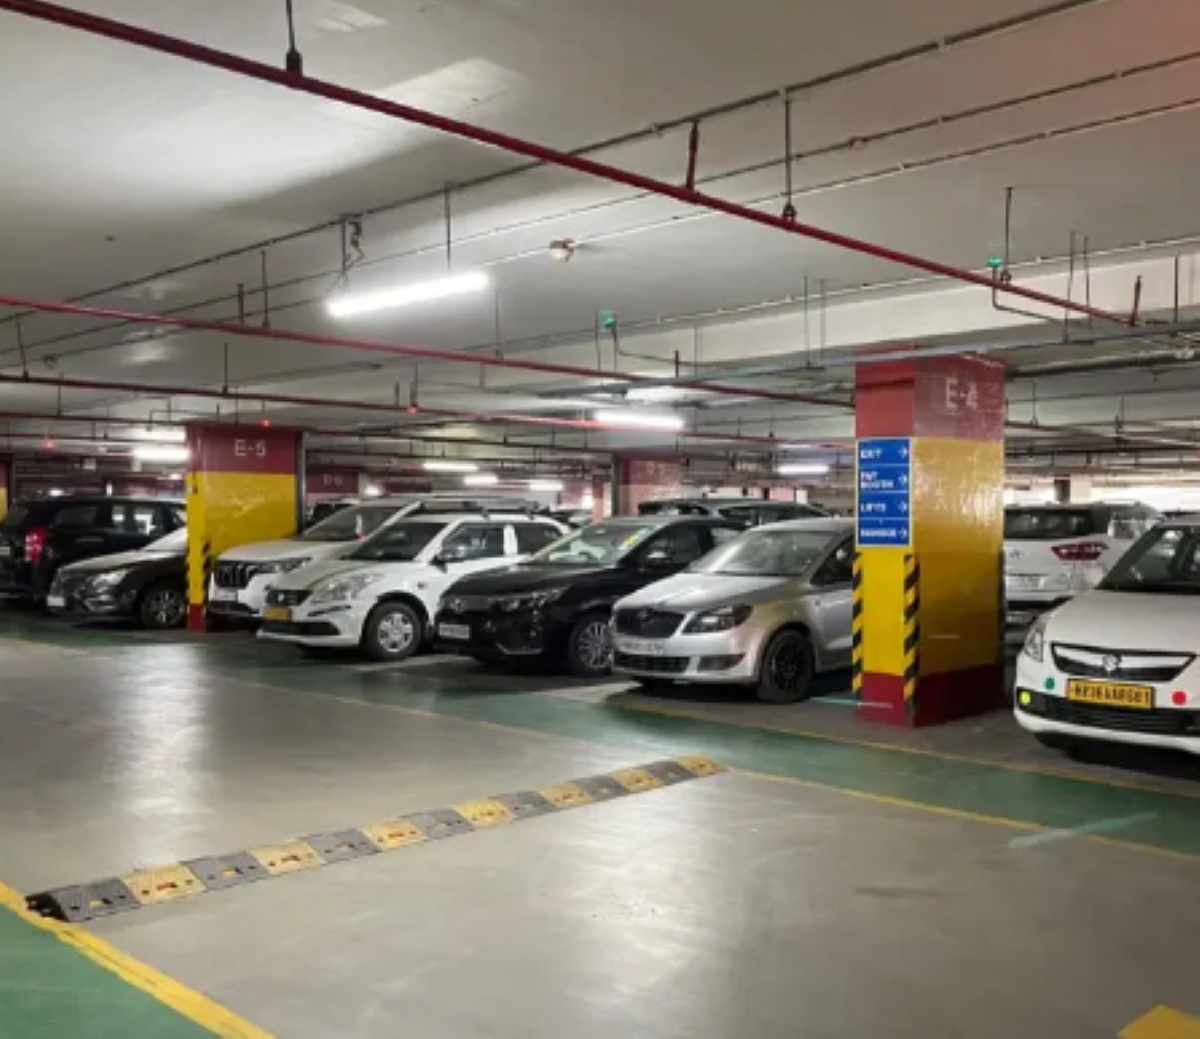 Noida News: नोएडा में अब इन जगहों पर पार्किंग शुल्क लागू, अथॉरिटी ने लिया बड़ा फैसला